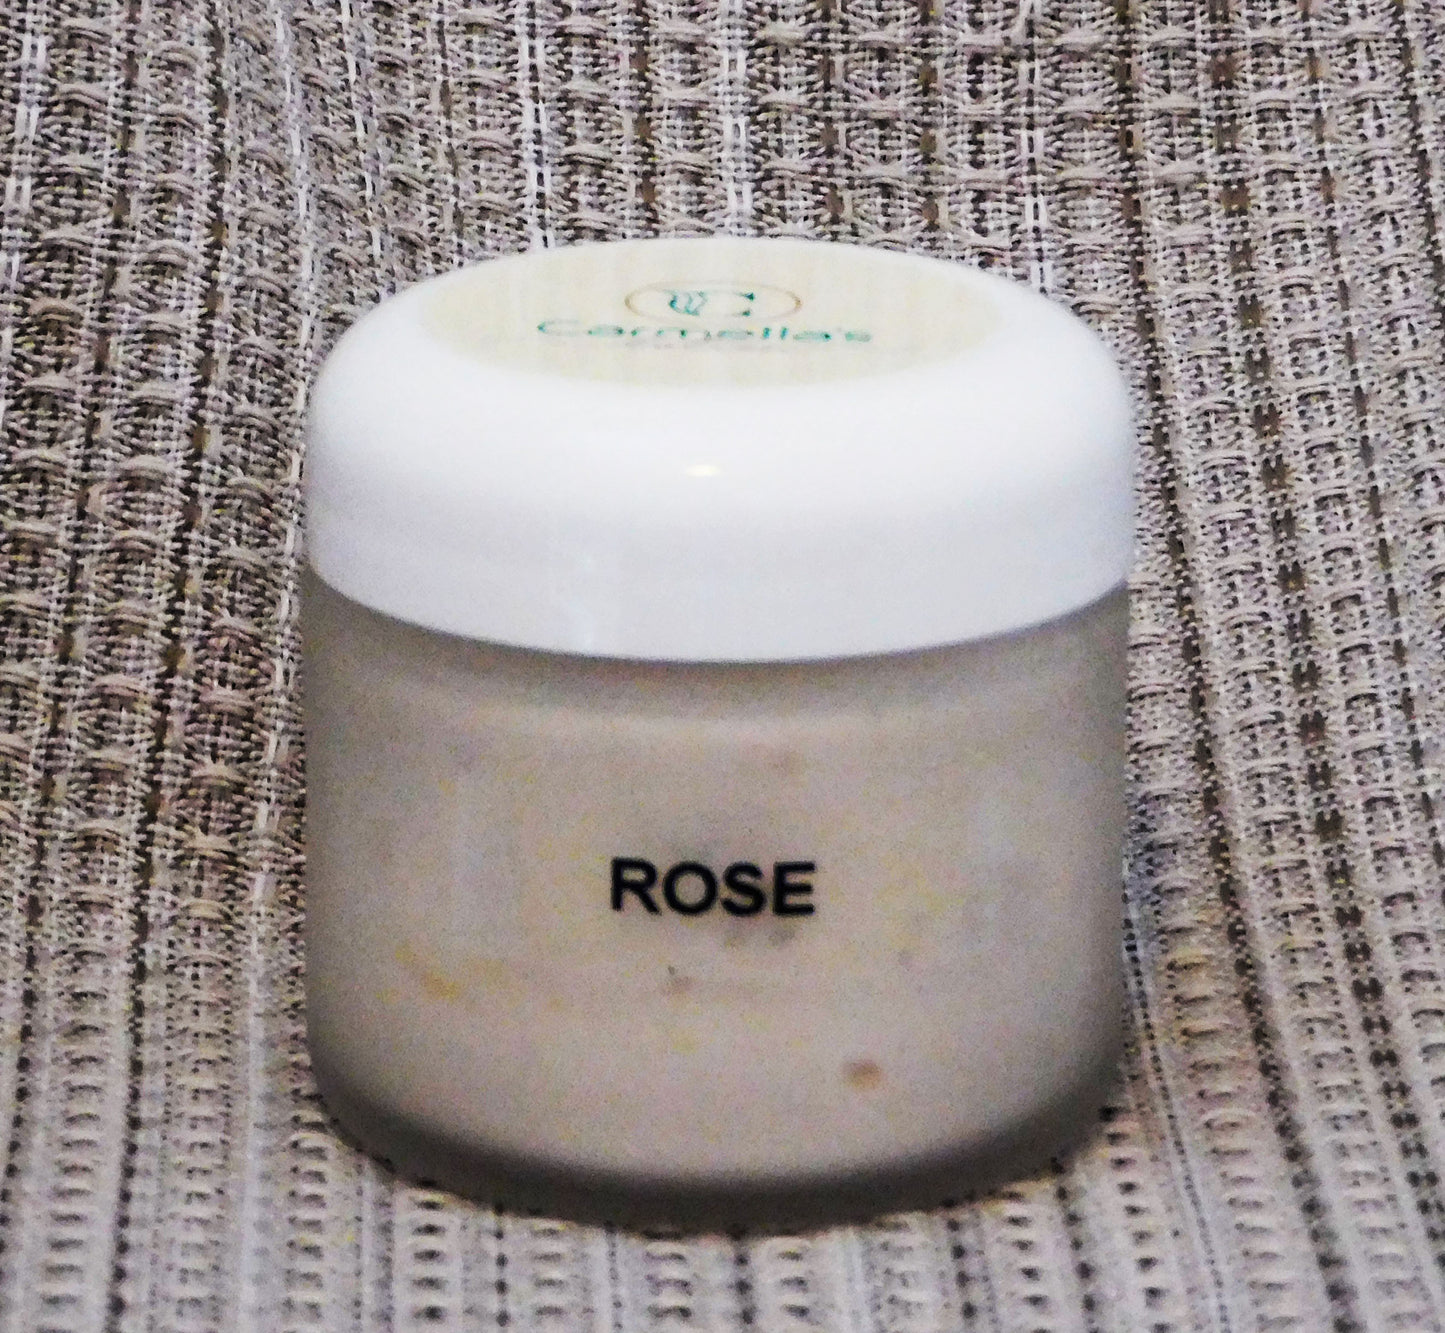 Rose Cream Lotion - 2 ounce - Carmella’s Lotion